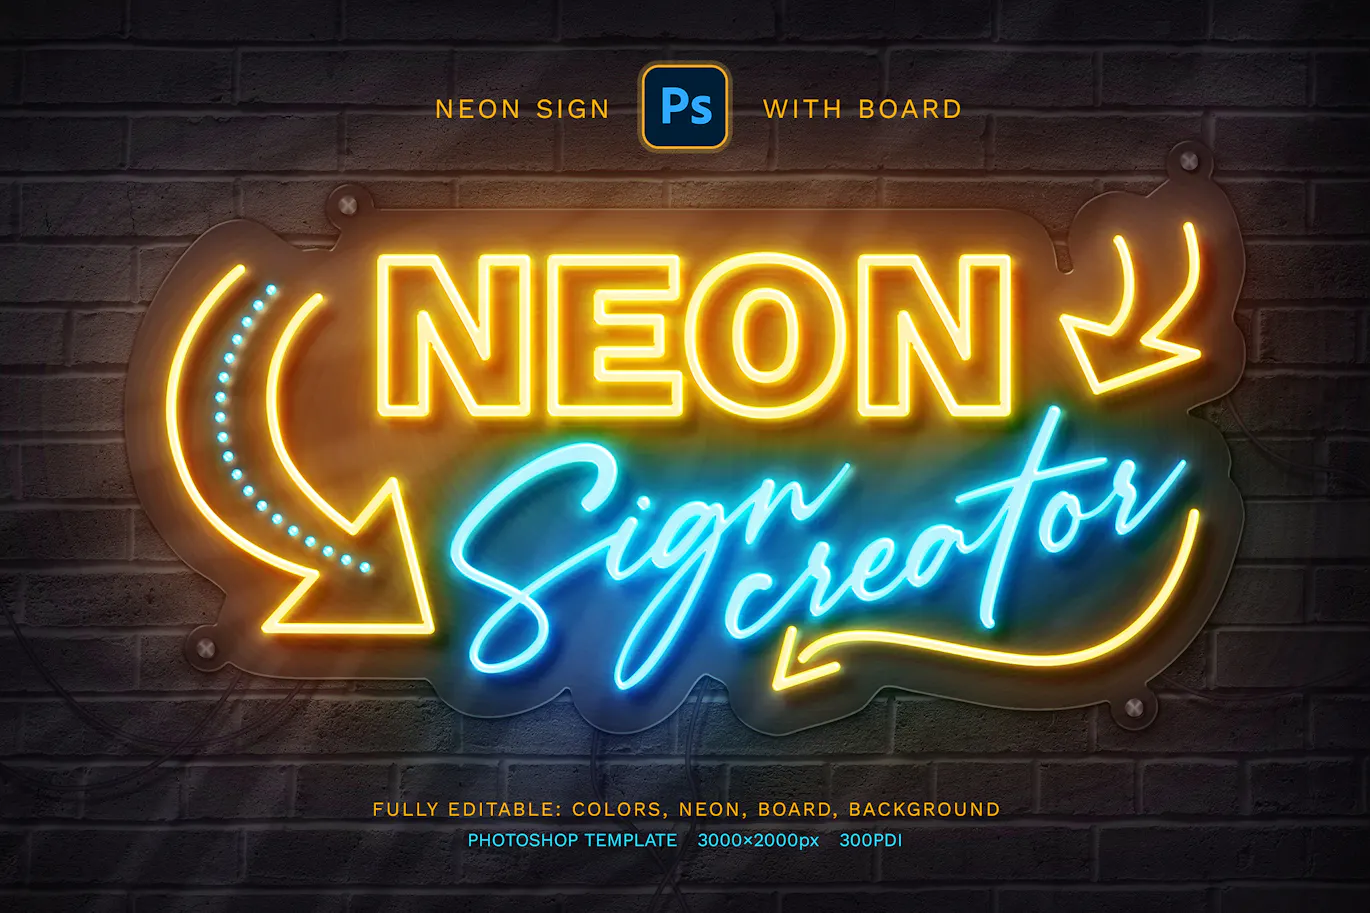 霓虹灯标志发光文字效果PSD模板 - Neon Sign Board 平面图形 第7张